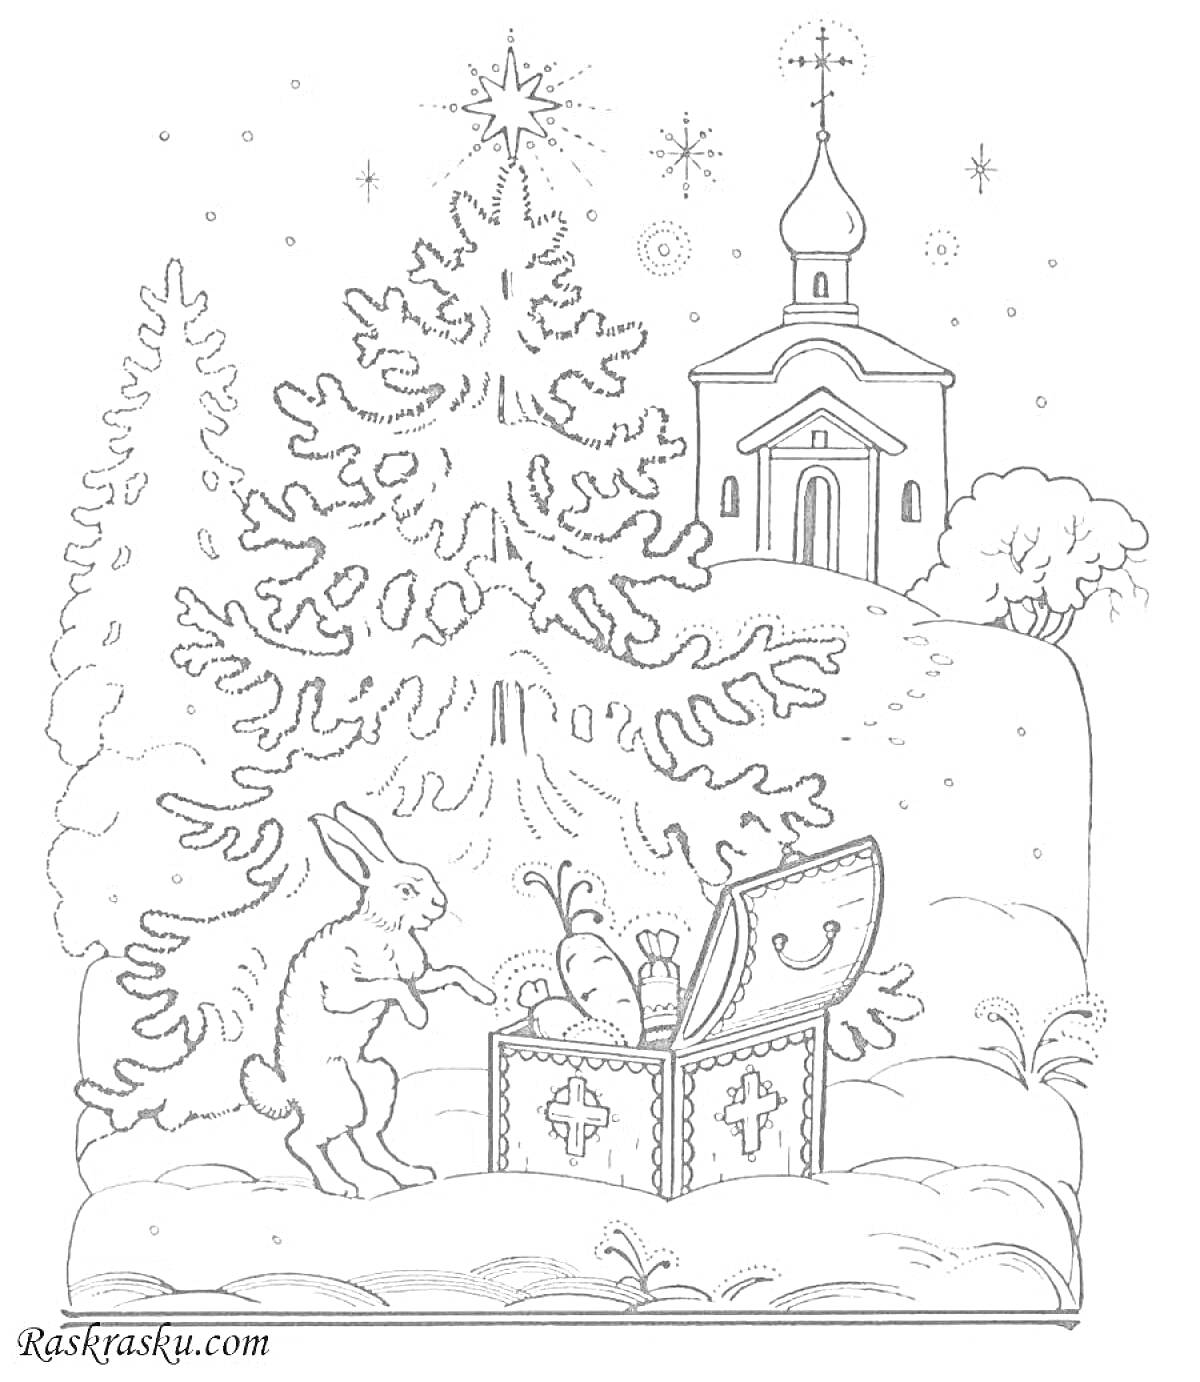 На раскраске изображено: Крещение, Открытка, Заяц, Подарки, Рождественская елка, Церковь, Звезды, Снег, Зима